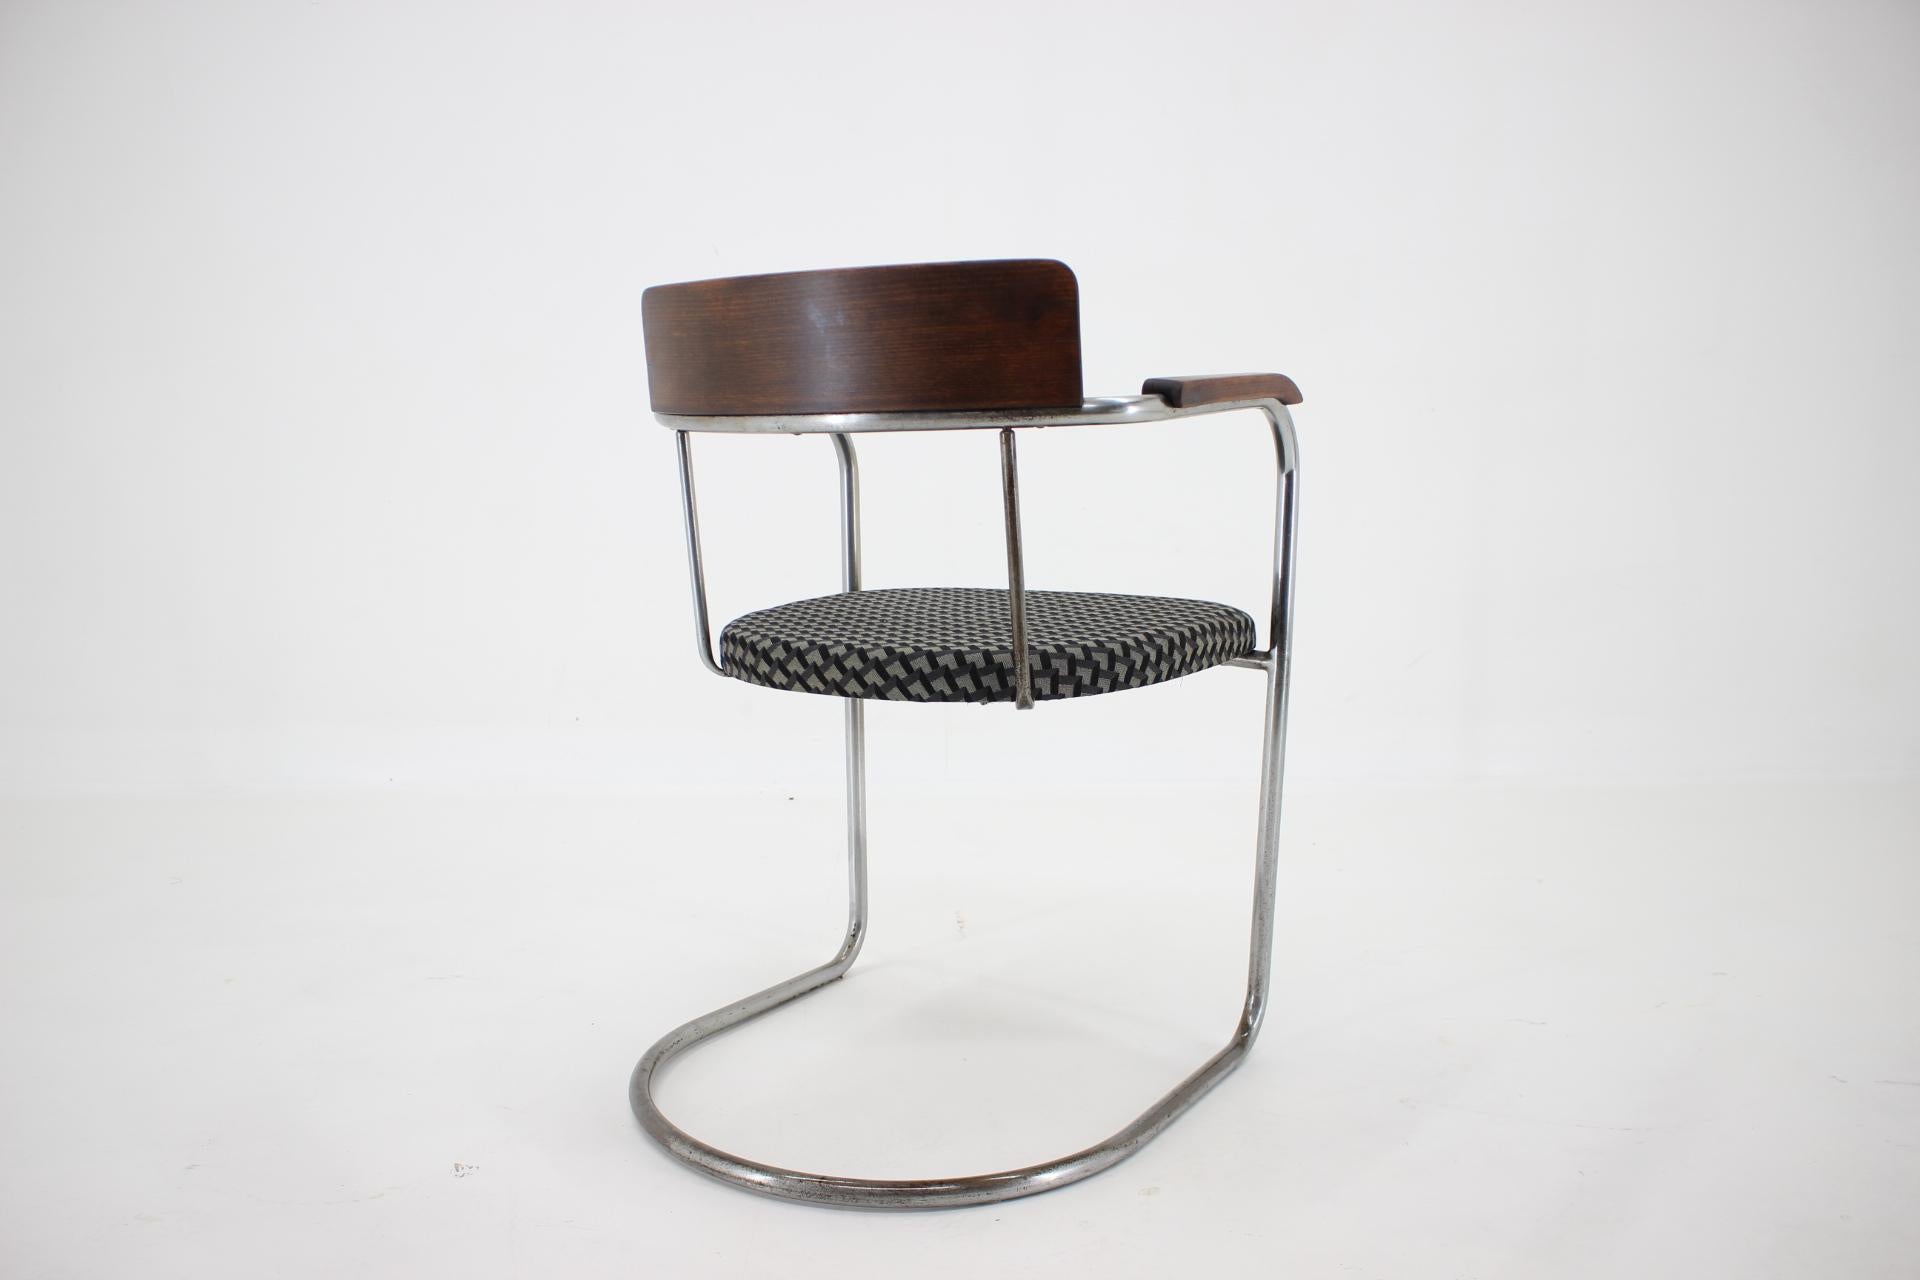 Bauhaus Tubular Steel Chrome Desk Chair 1930s / Czechoslovakia In Good Condition For Sale In Praha, CZ